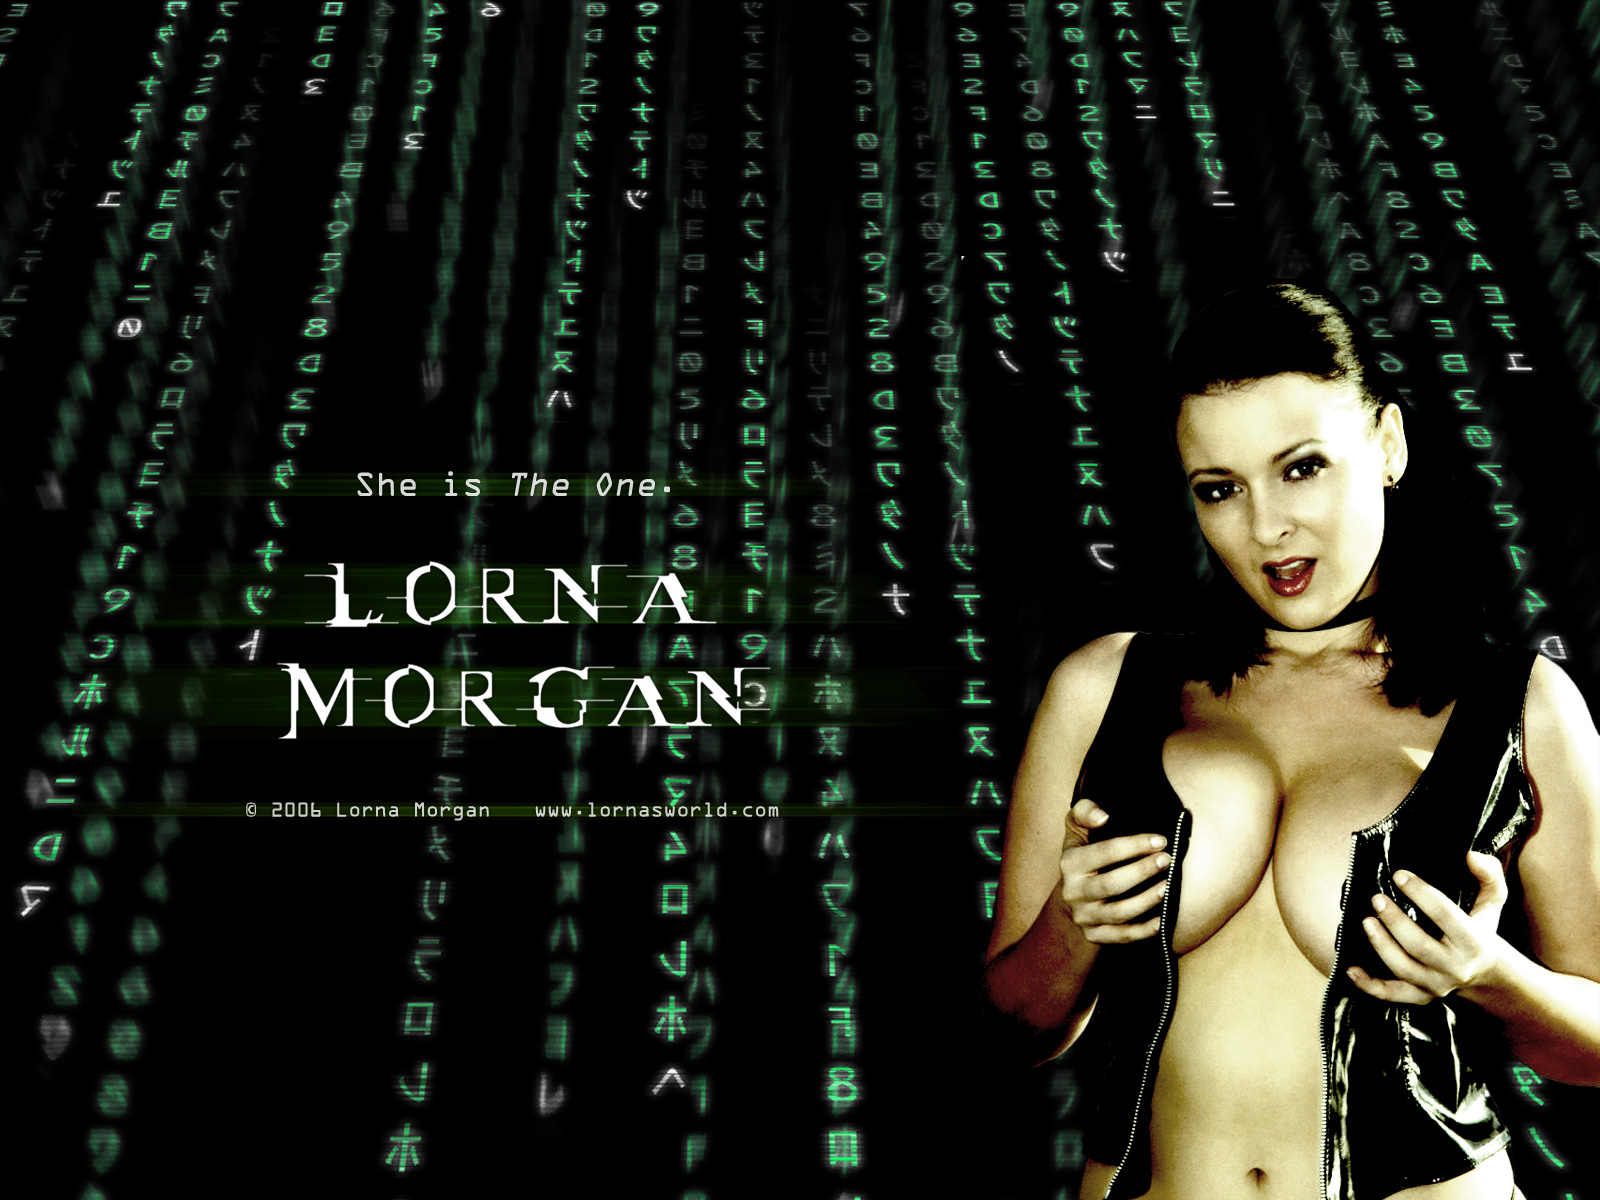 Lorna morgan 2